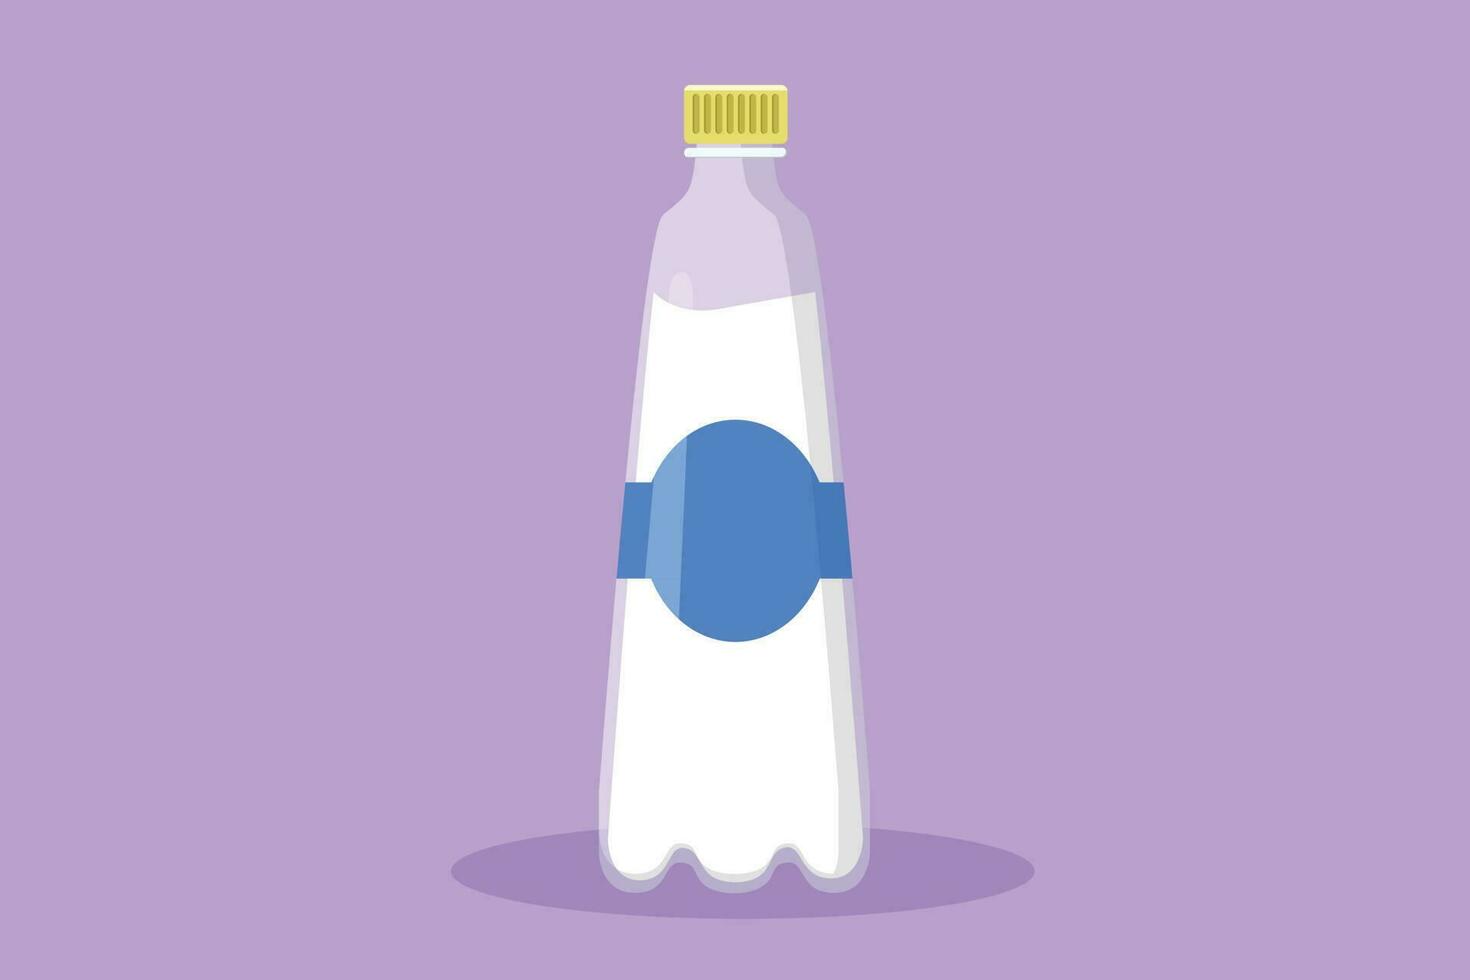 Grafik eben Design Zeichnung frisch Milch auf Flasche Glas Verpackung gesund trinken Produkt. frisch Milch zum Gesundheit Essen Ernährung. zum Flyer, Aufkleber, Karte, Logo, Symbol. Karikatur Stil Vektor Illustration